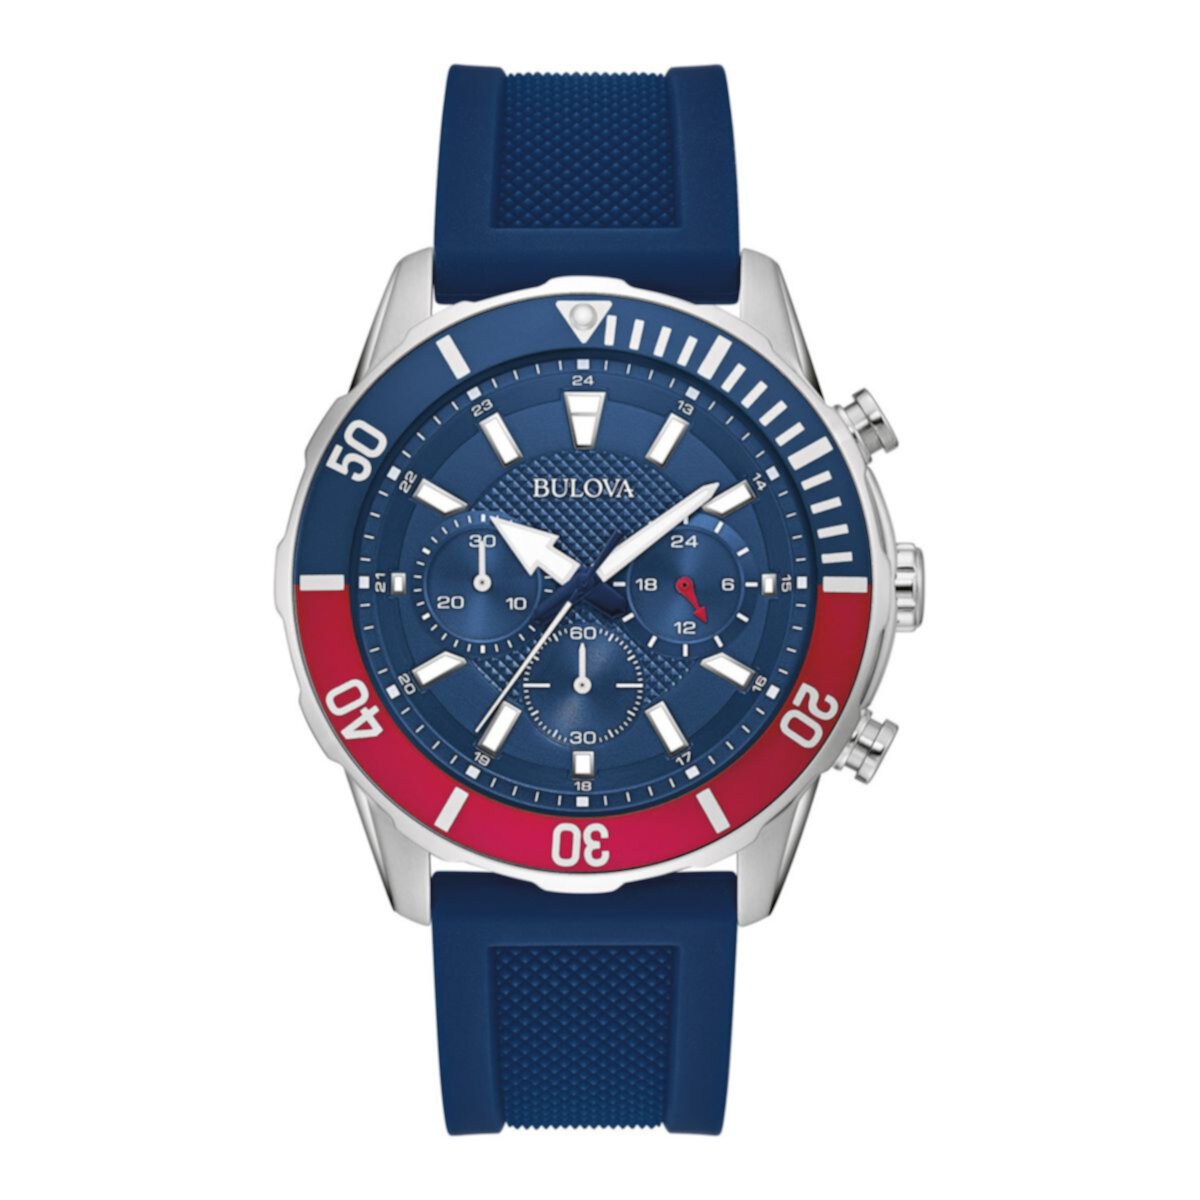 Мужские спортивные часы Bulova с синим силиконовым ремешком с хронографом - 98A288 Bulova